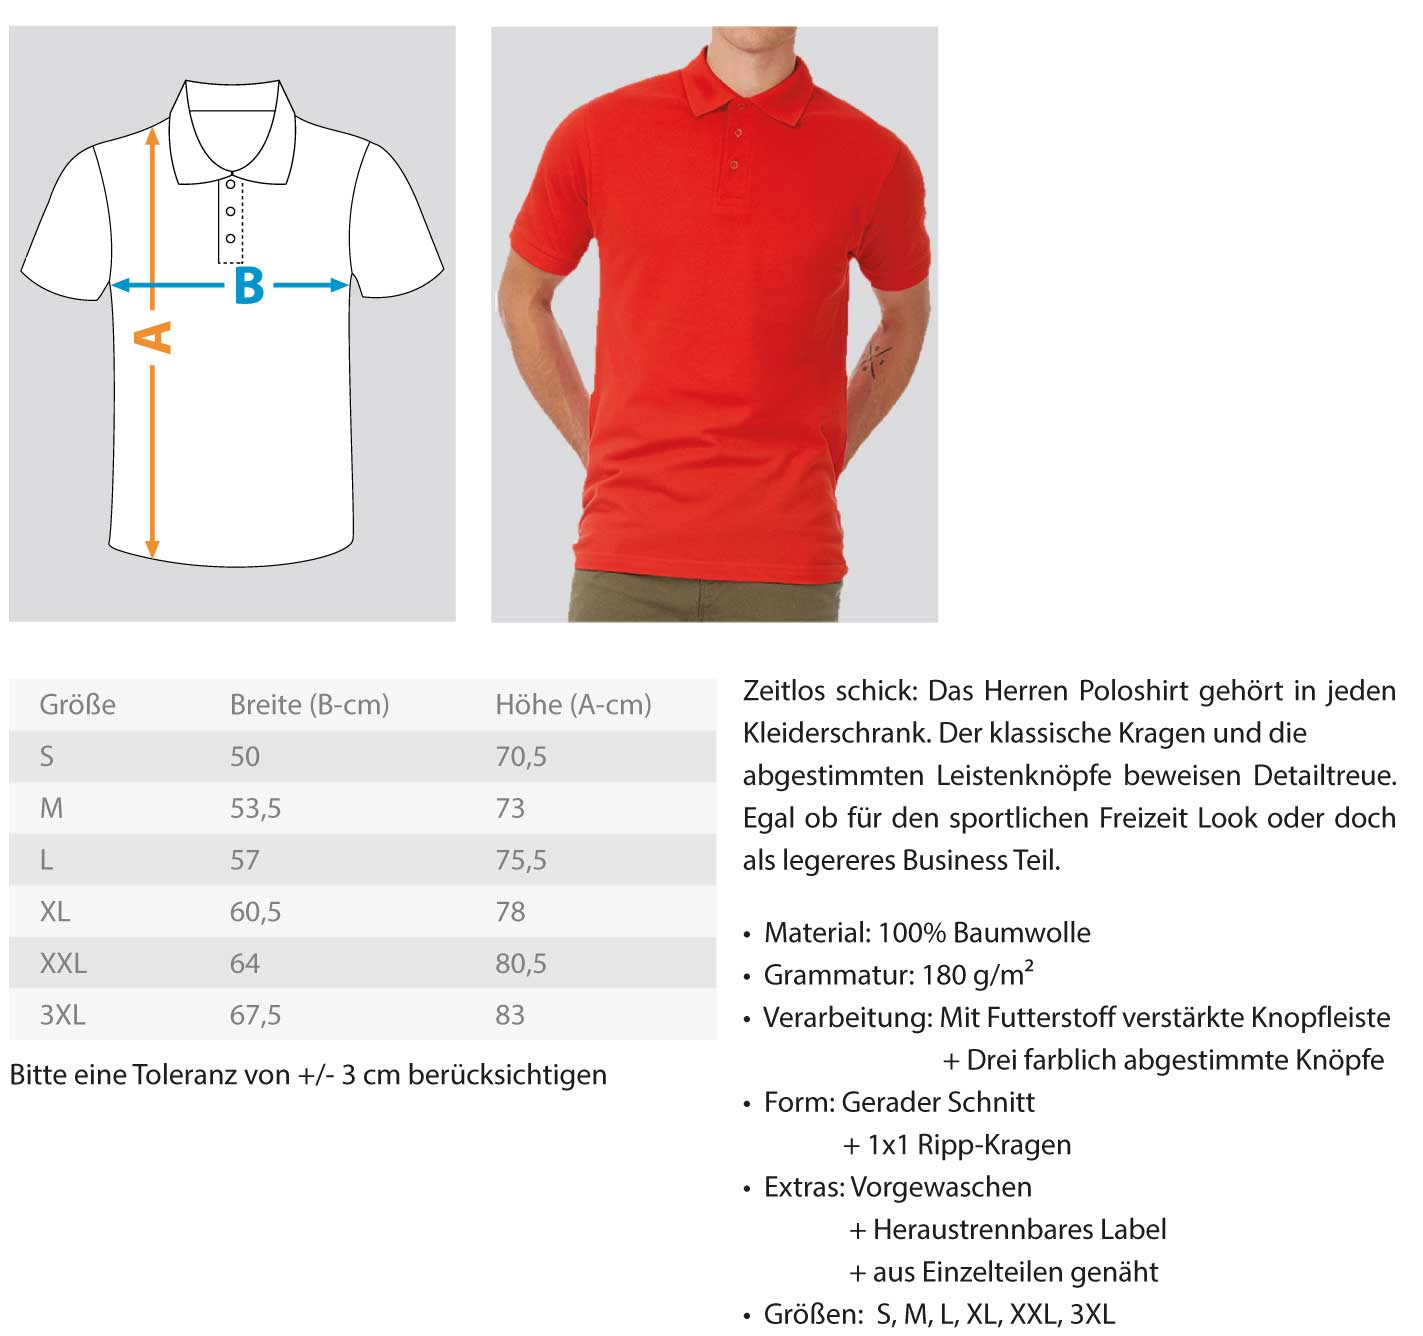 Gerüstbauer / Zunftzeichen  - Polo Shirt €36.95 Gerüstbauer - Shop >>